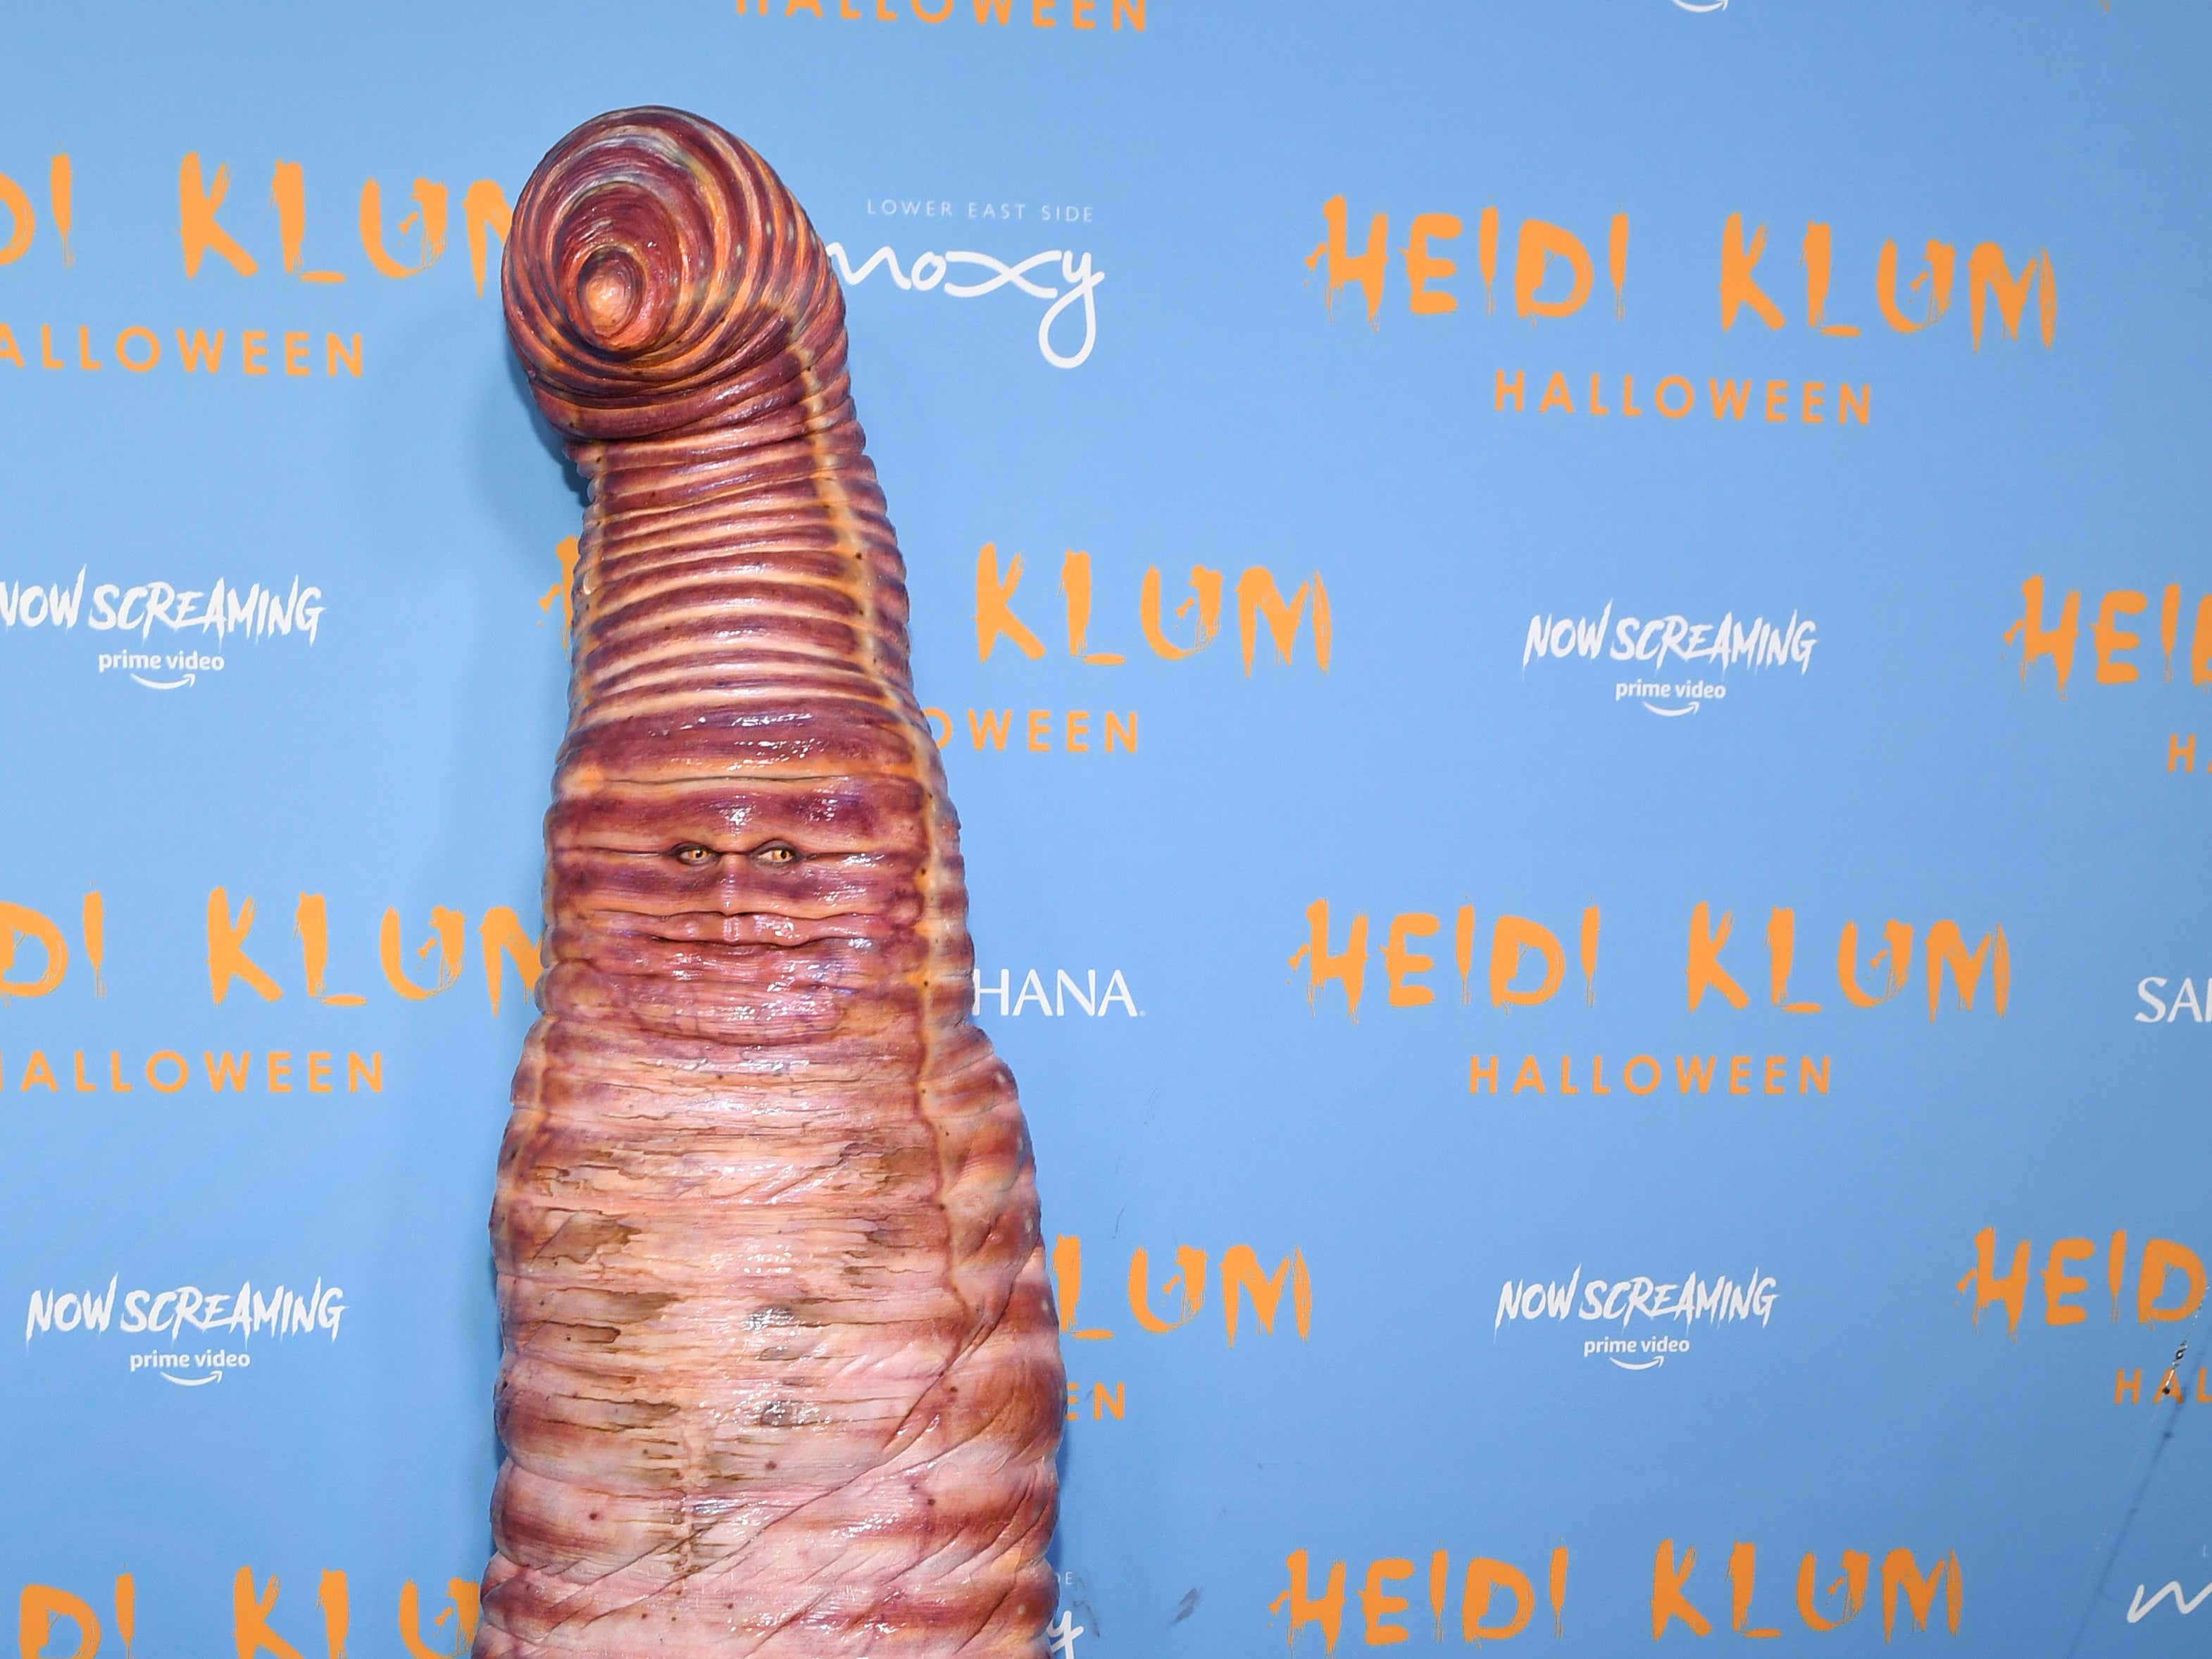 Heidi Klum in worm mode